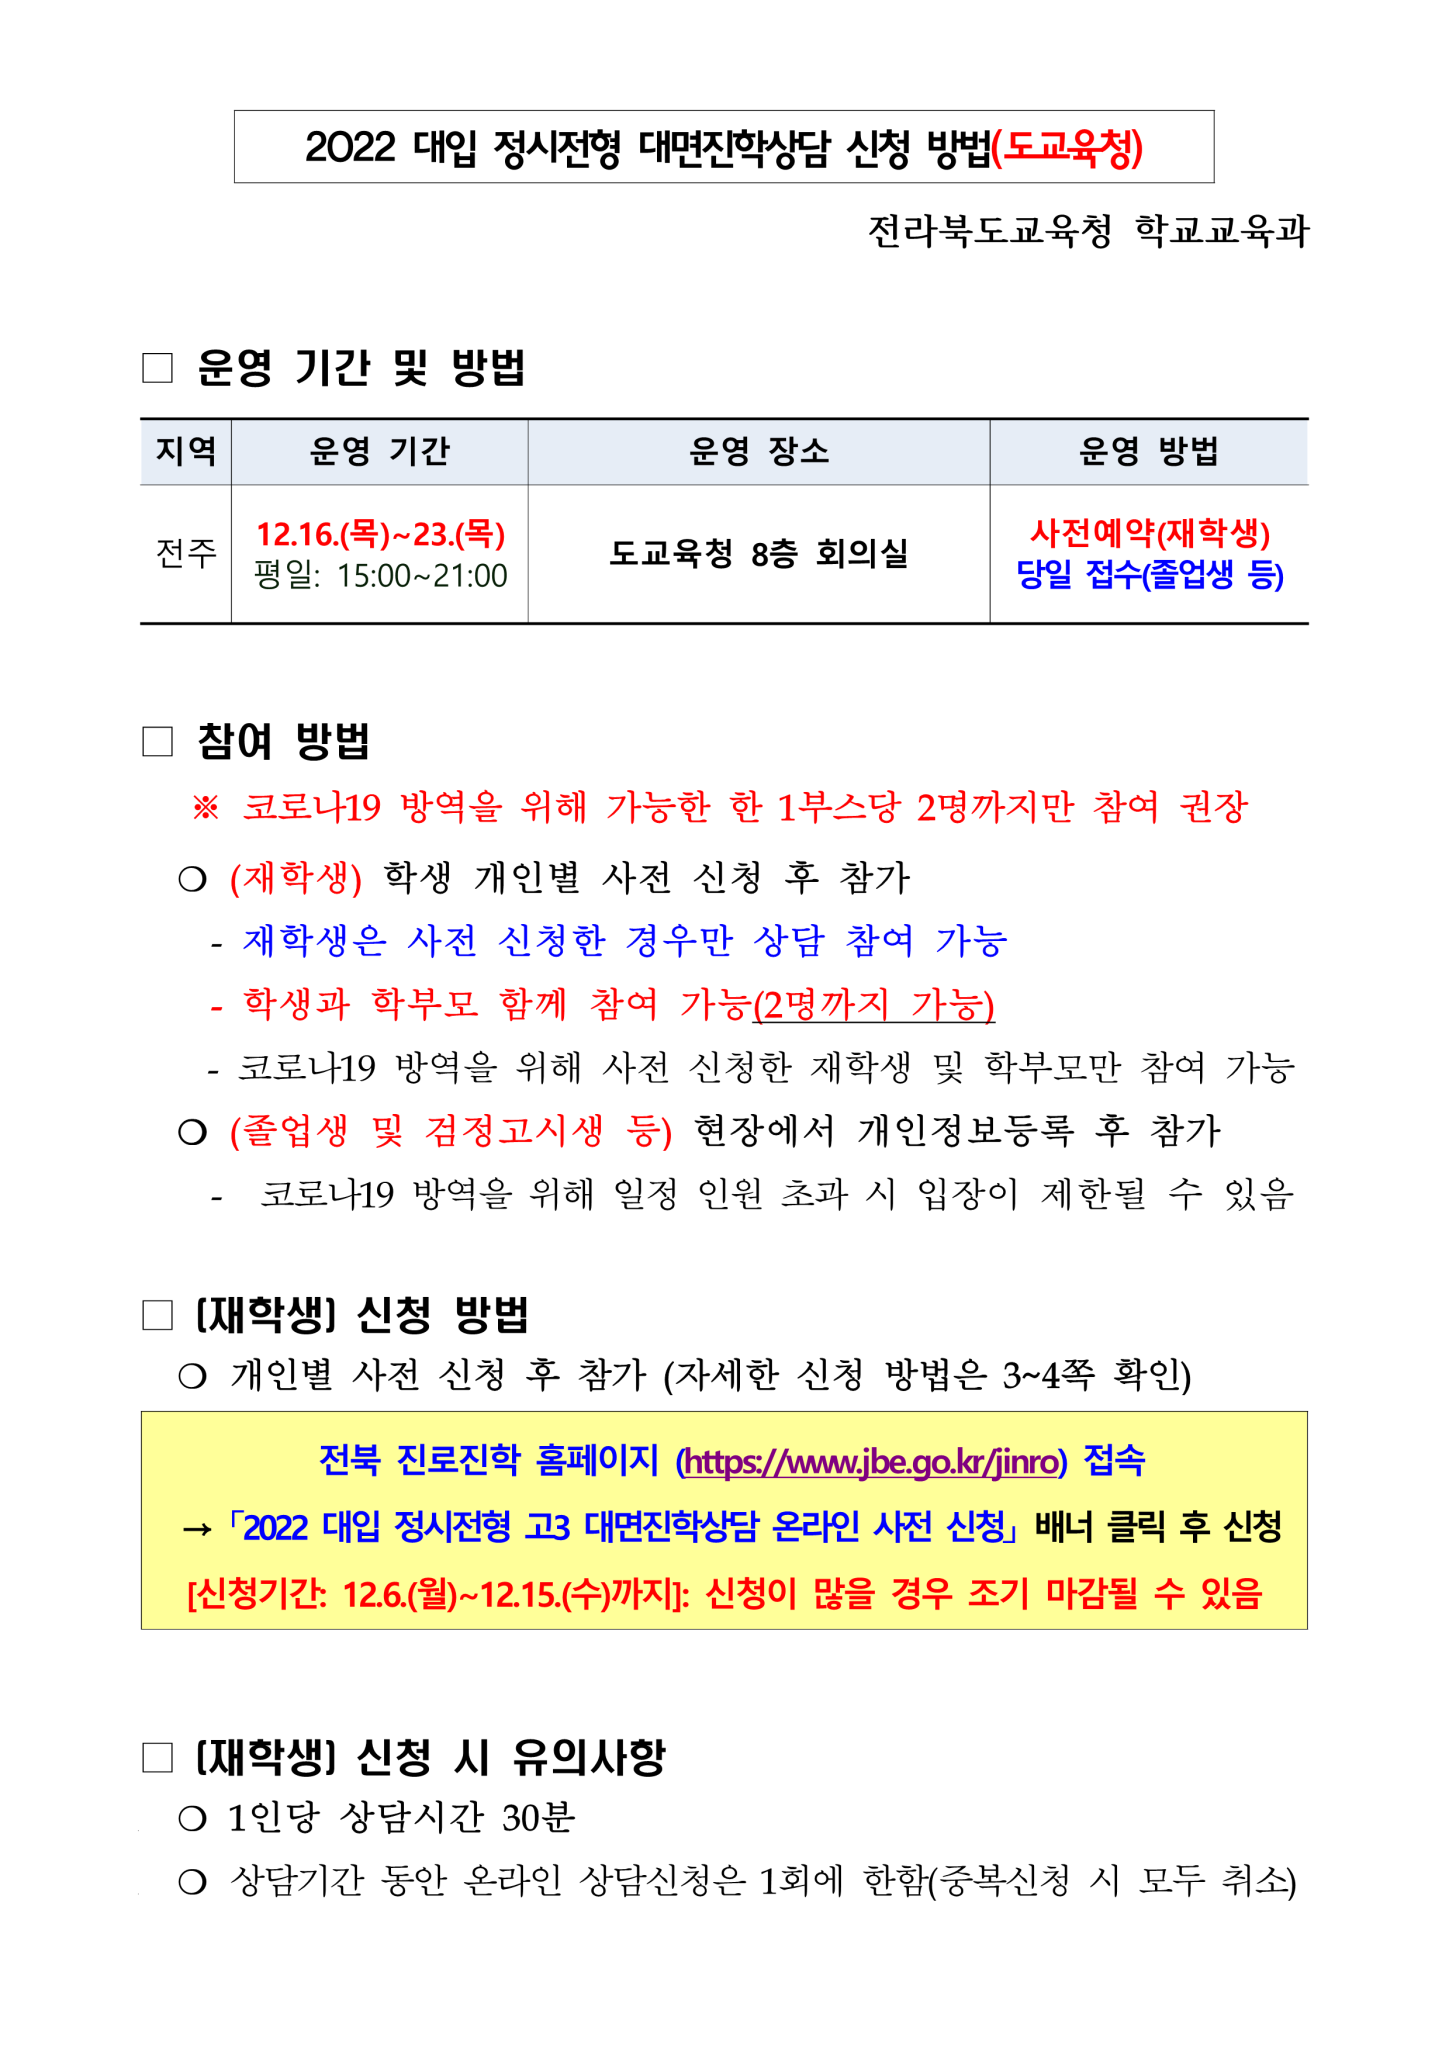 2022_대입 정시상담 온라인 신청방법(도교육청)_1